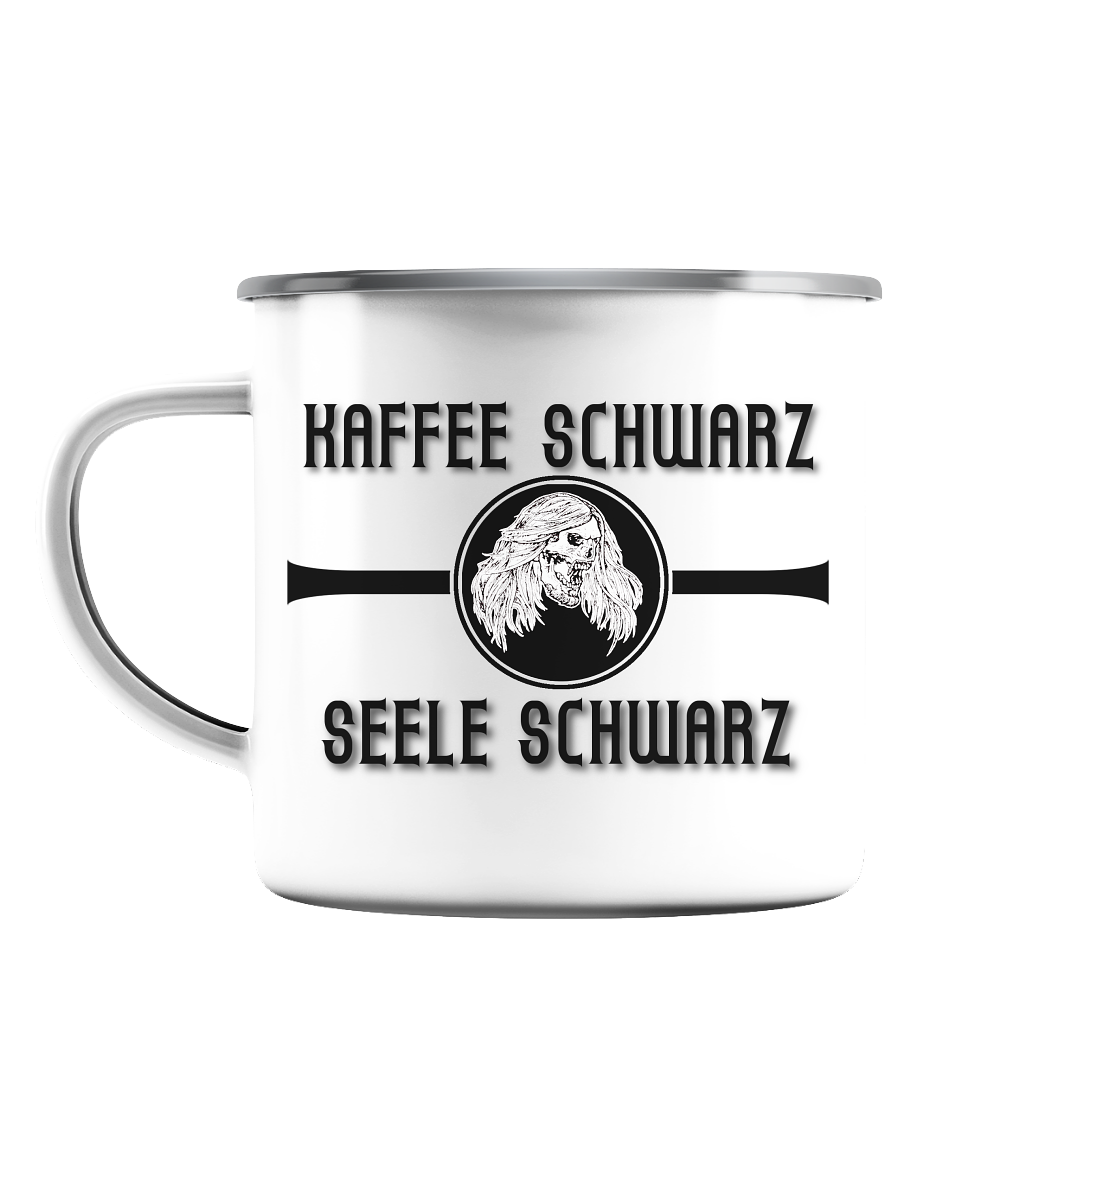 Eine Micha-El Goehre - offizielle Fan-Tasse: Kaffee schwarz - Emaille - weiß-silberne Tasse mit kunstdrucke-Design.